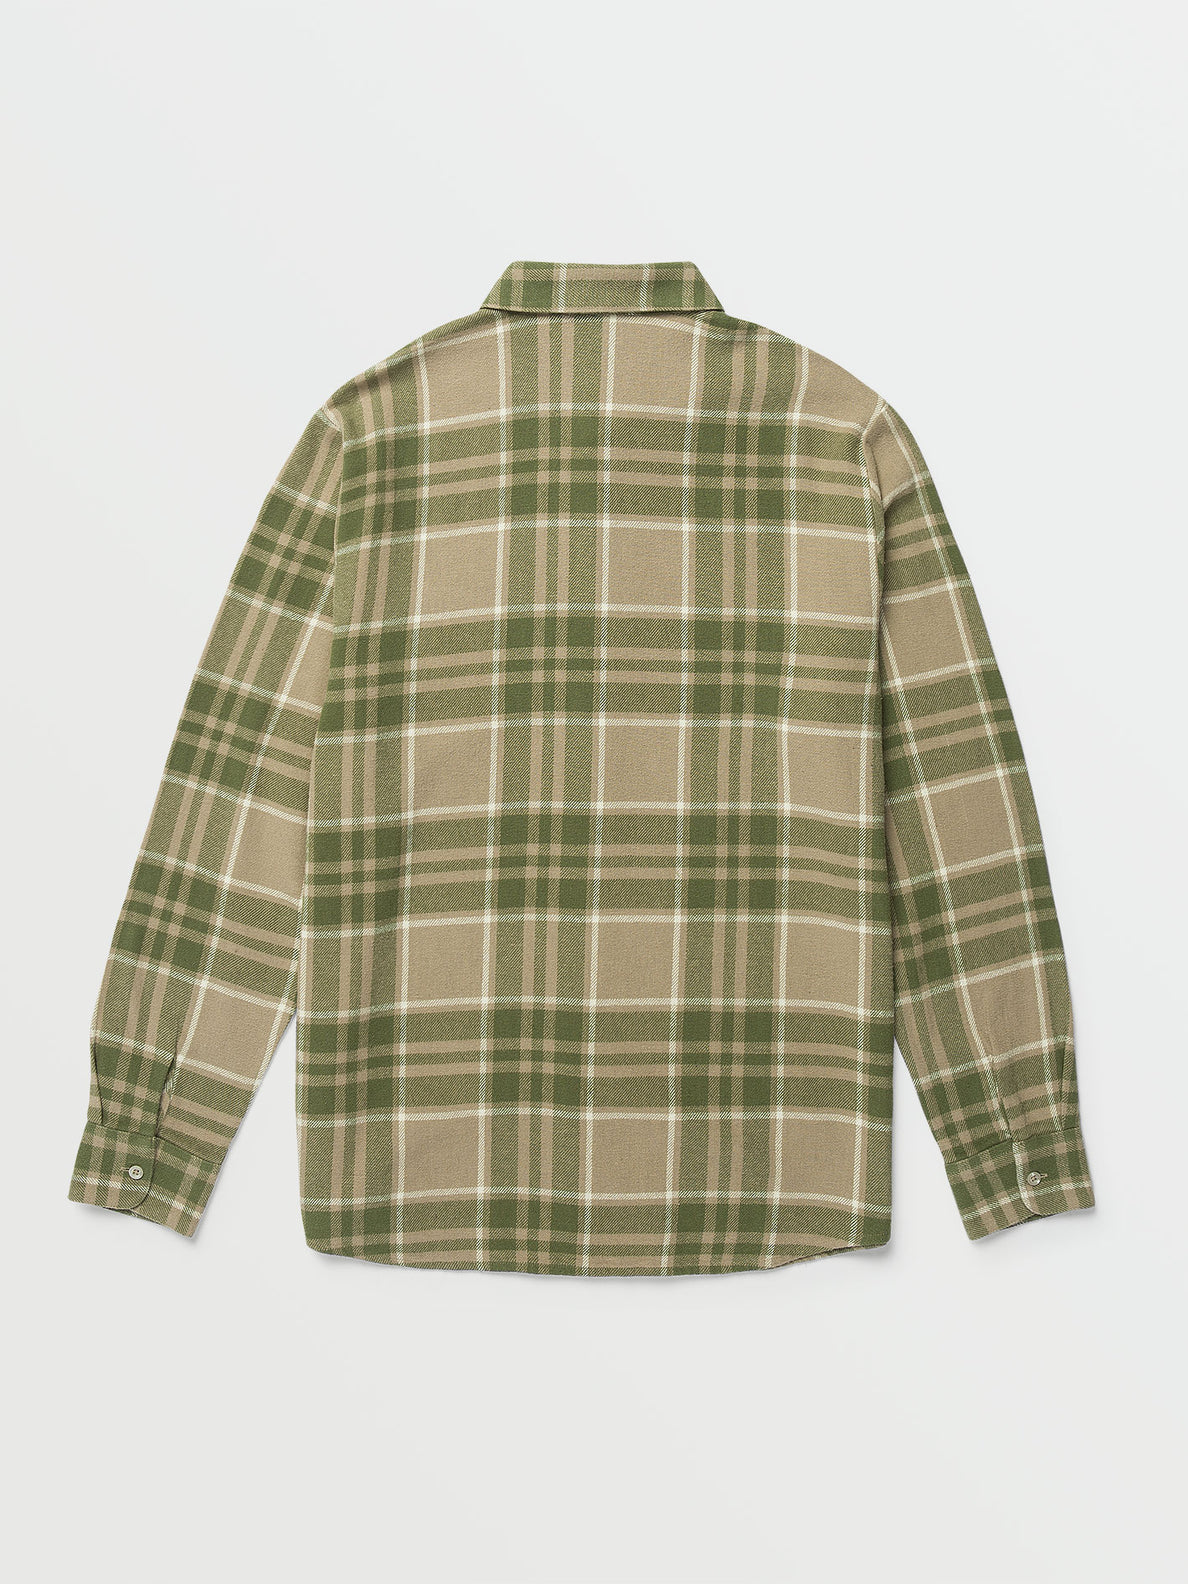 Leland Long Sleeve Flannel - Khaki